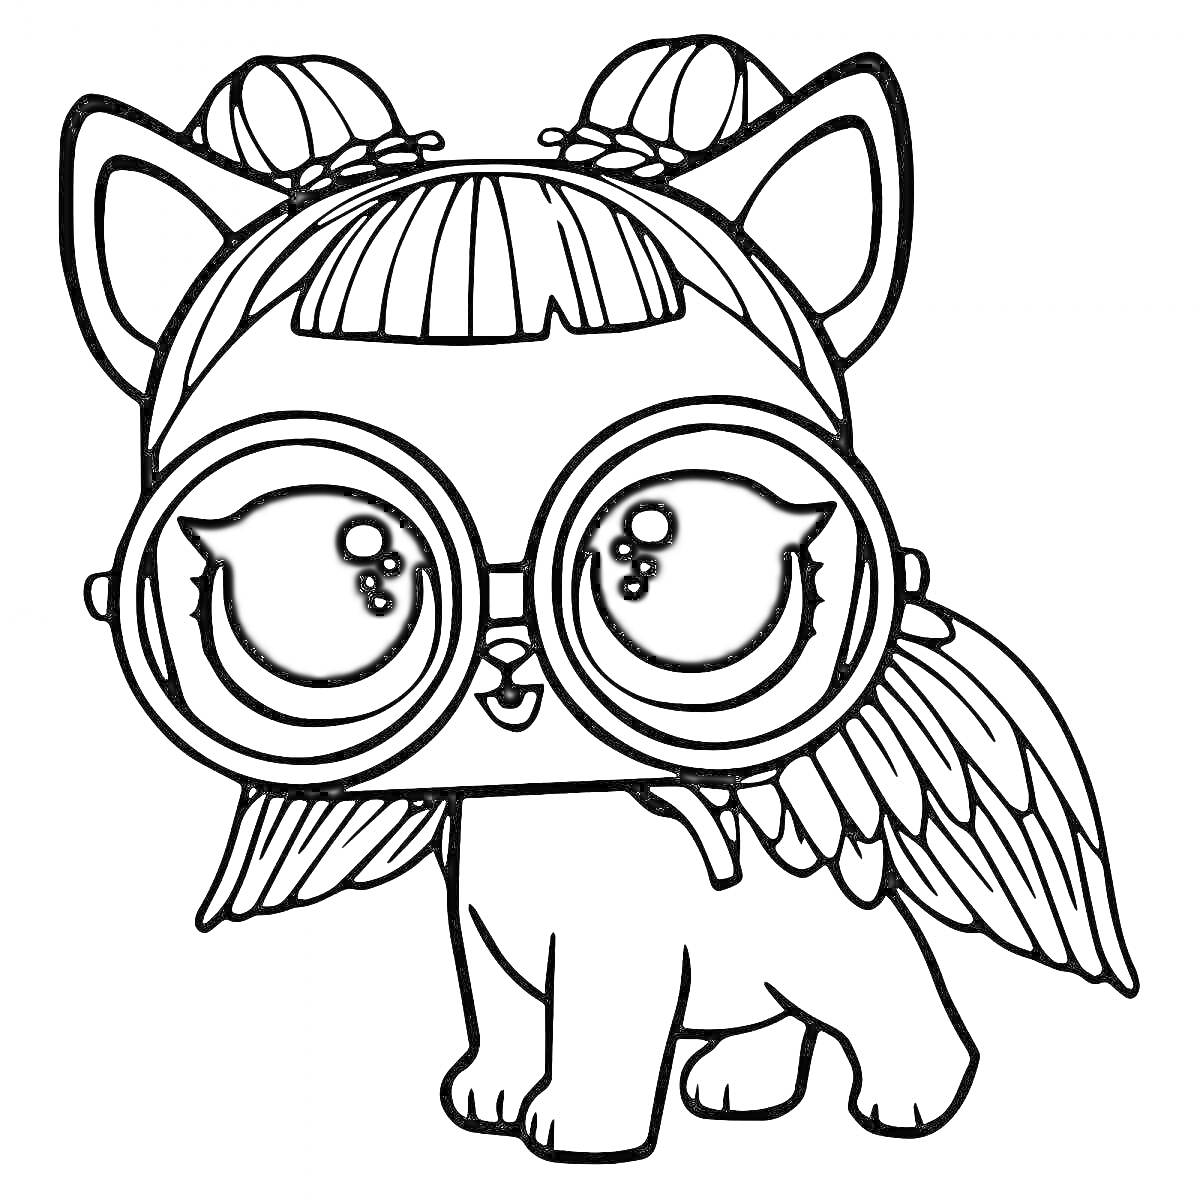 Раскраска Собачка из Лол с большого размера очками, крыльями и двумя косичками на голове